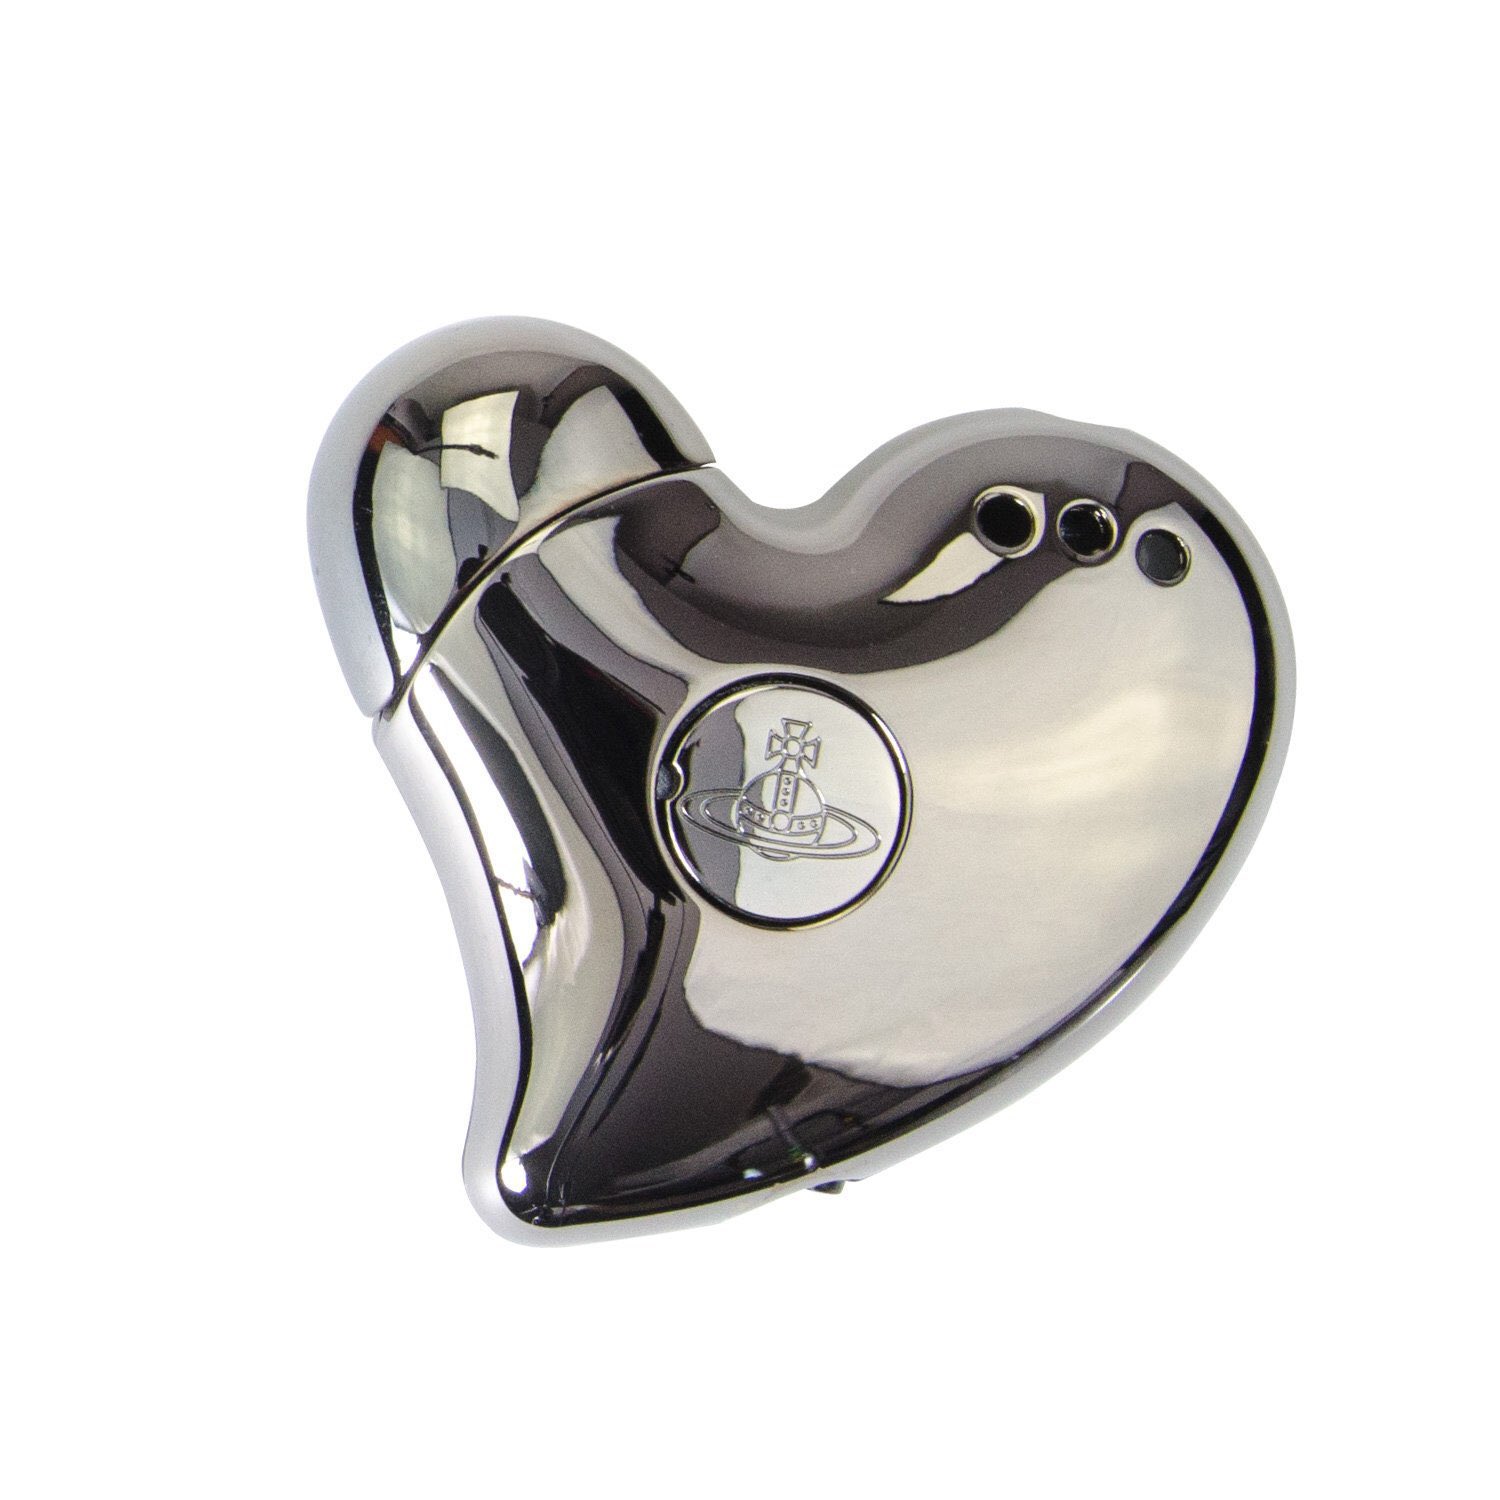 ❦ on Twitter: "adding the vivienne heart shaped lighter to my v'day https://t.co/S6dITlVEpT" / Twitter